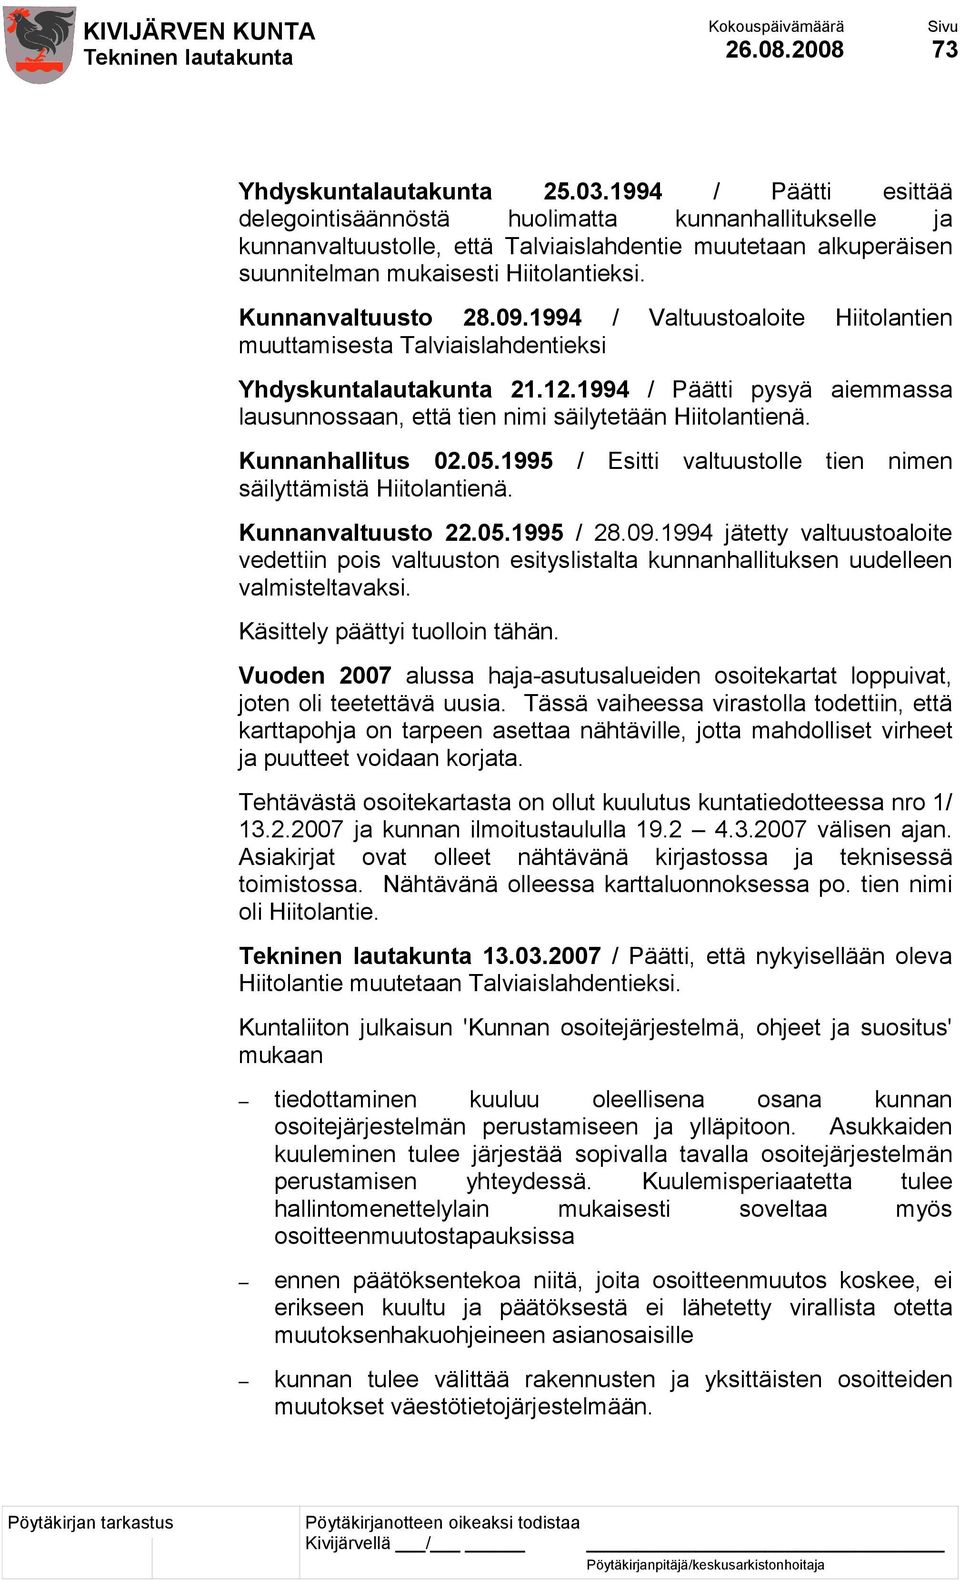 Kunnanvaltuusto 28.09.1994 / Valtuustoaloite Hiitolantien muuttamisesta Talviaislahdentieksi Yhdyskuntalautakunta 21.12.